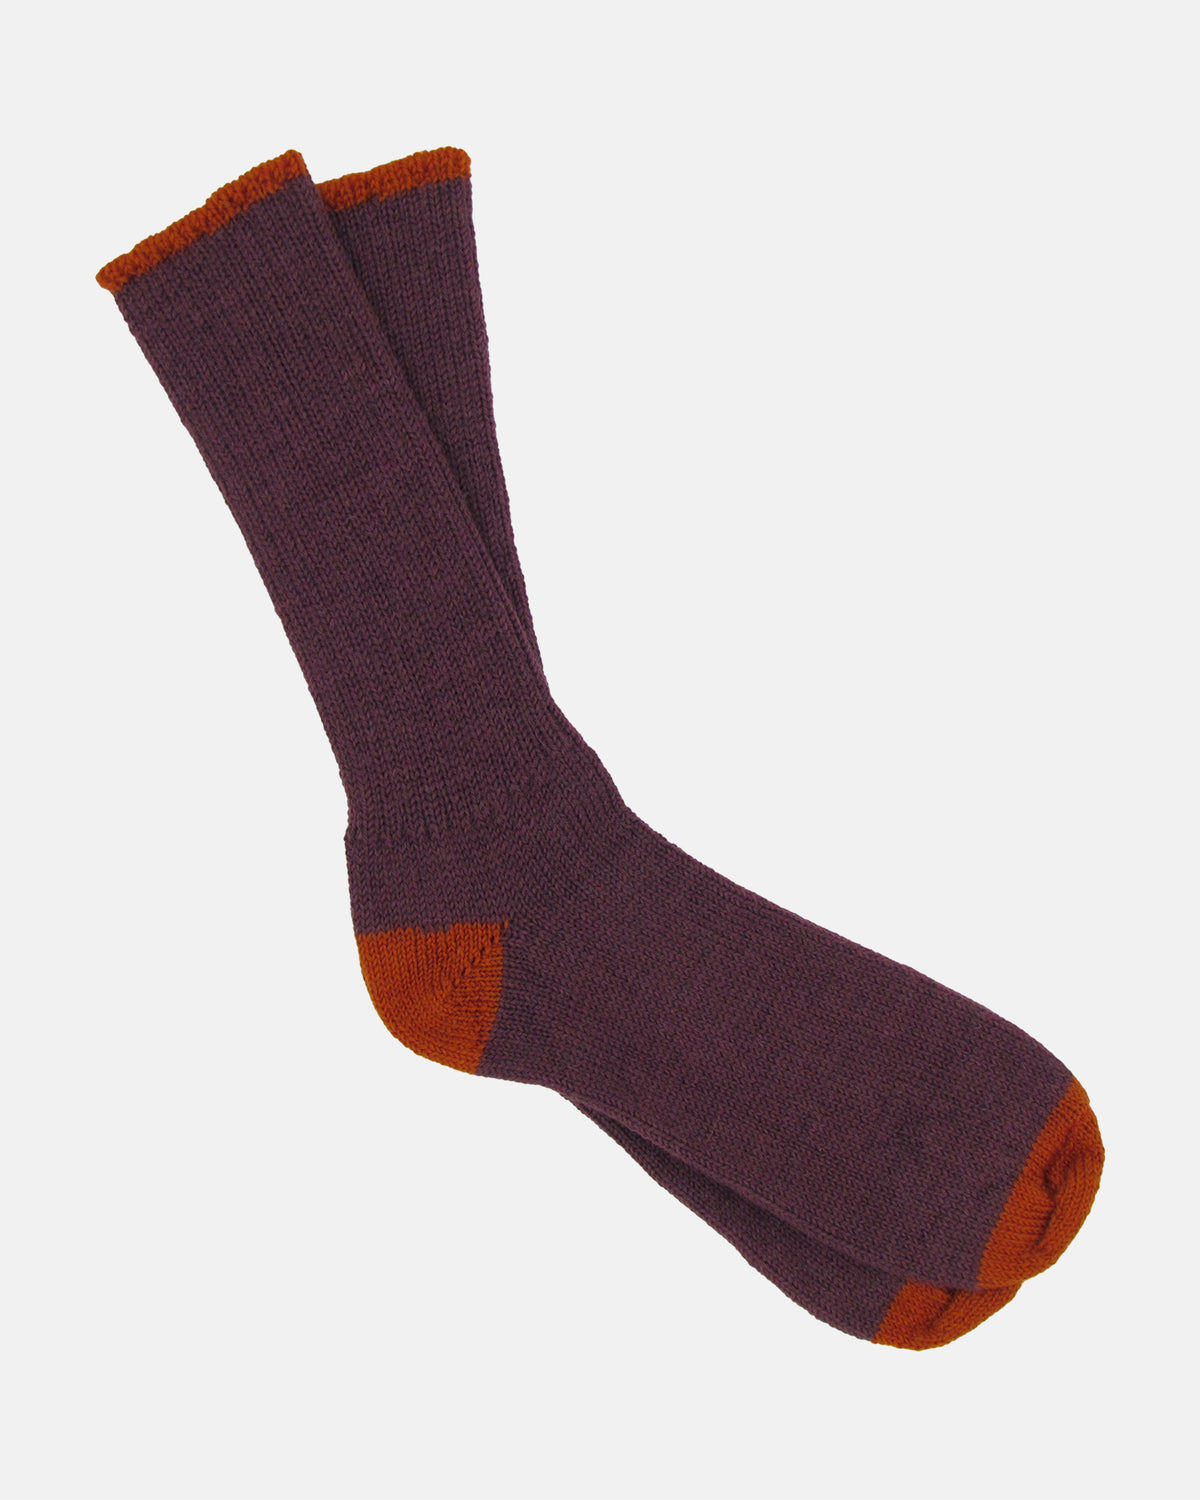 Soft Wool Socks - Aubergine/Orange